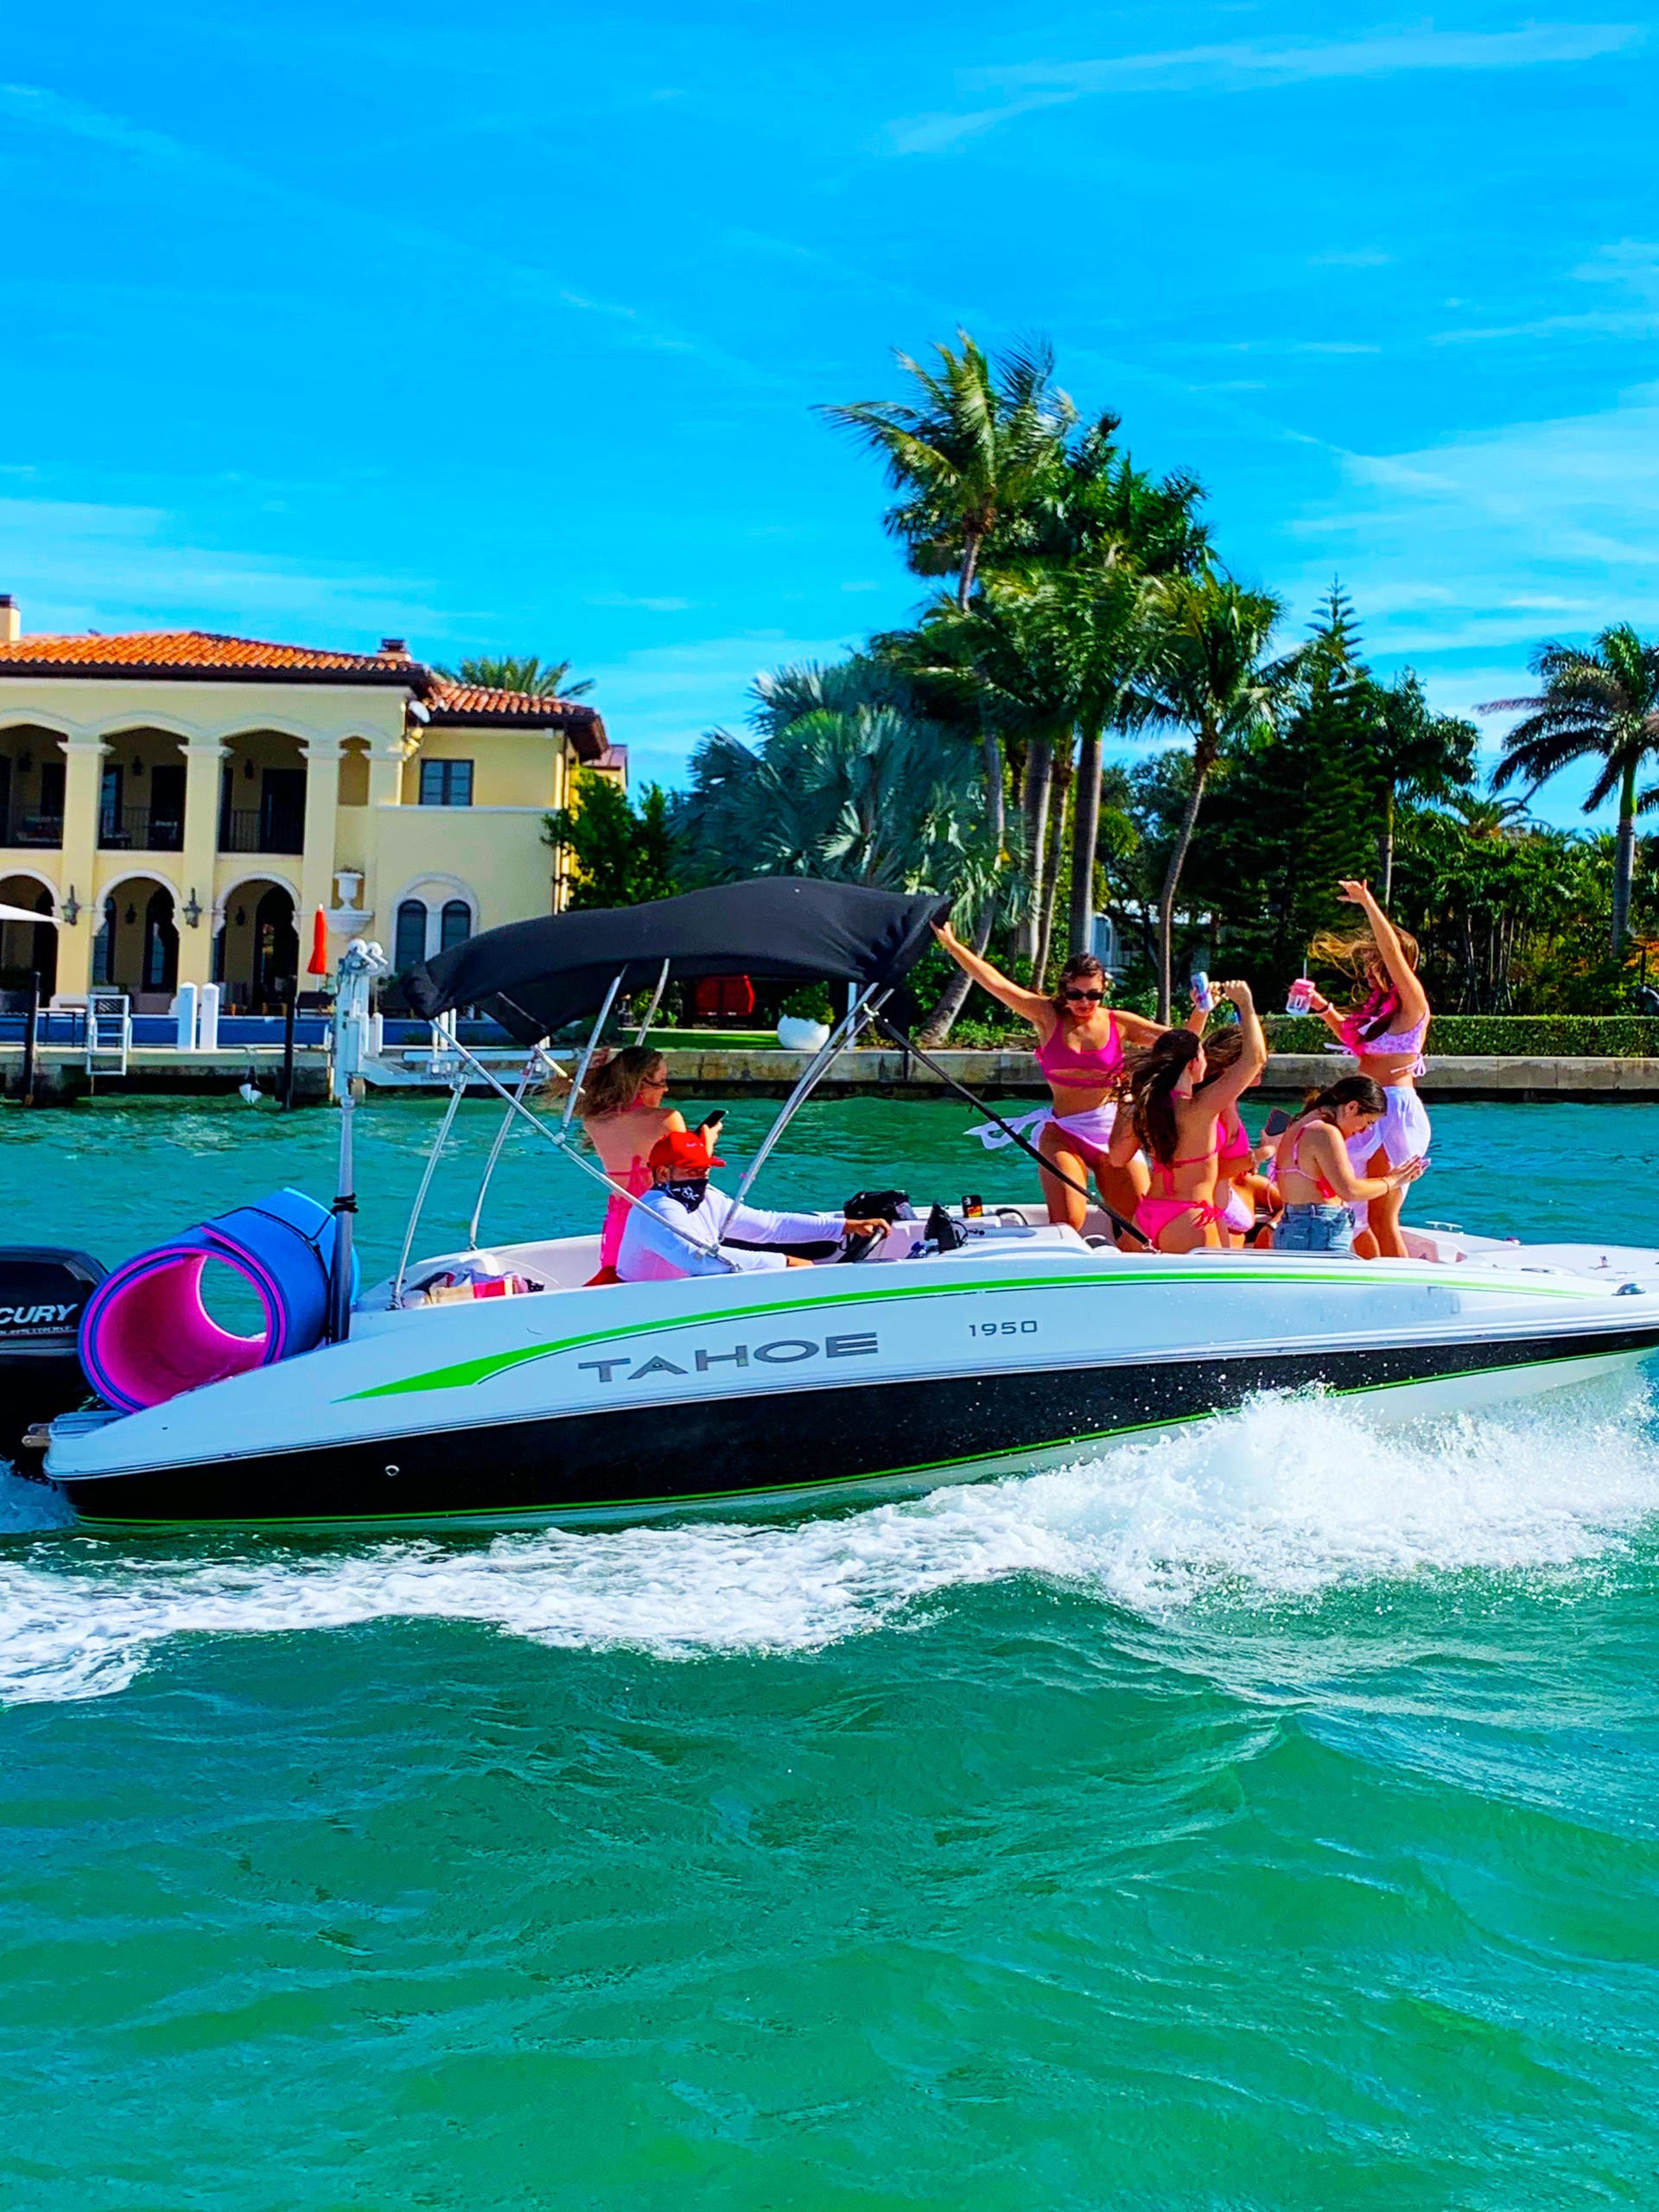 Fun Boat Rental in Miami